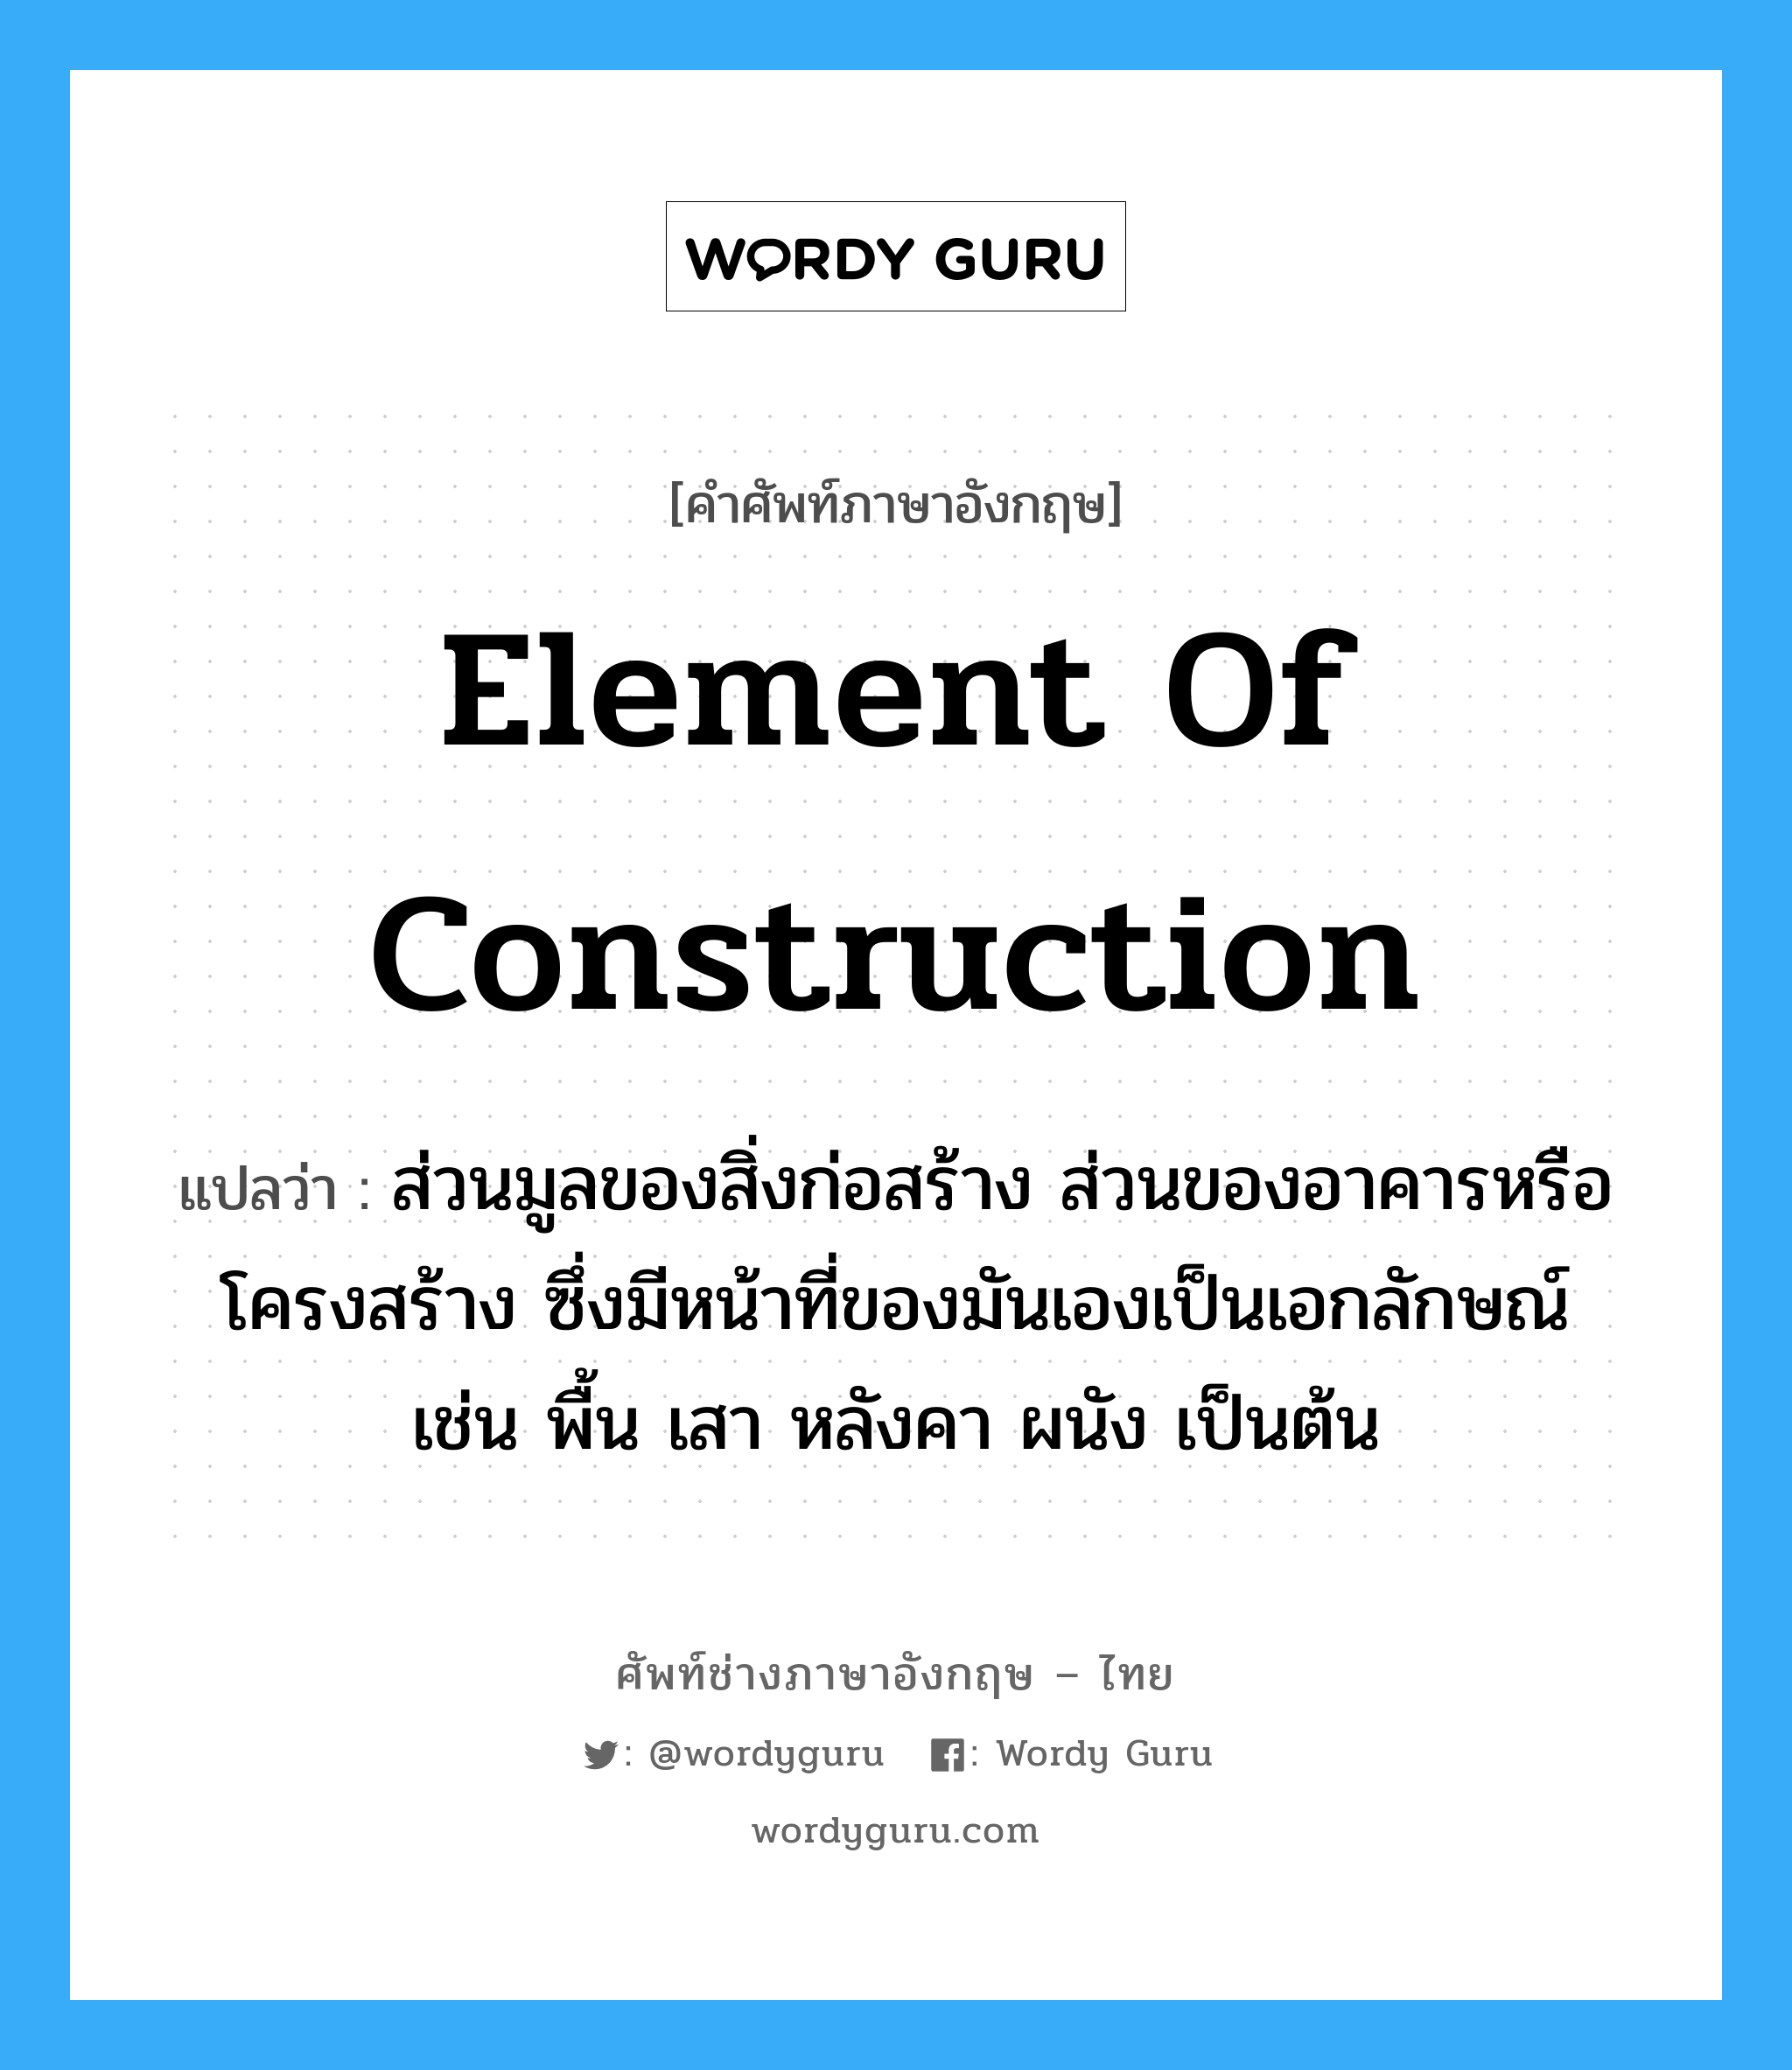 element of construction แปลว่า?, คำศัพท์ช่างภาษาอังกฤษ - ไทย element of construction คำศัพท์ภาษาอังกฤษ element of construction แปลว่า ส่วนมูลของสิ่งก่อสร้าง ส่วนของอาคารหรือโครงสร้าง ซึ่งมีหน้าที่ของมันเองเป็นเอกลักษณ์ เช่น พื้น เสา หลังคา ผนัง เป็นต้น